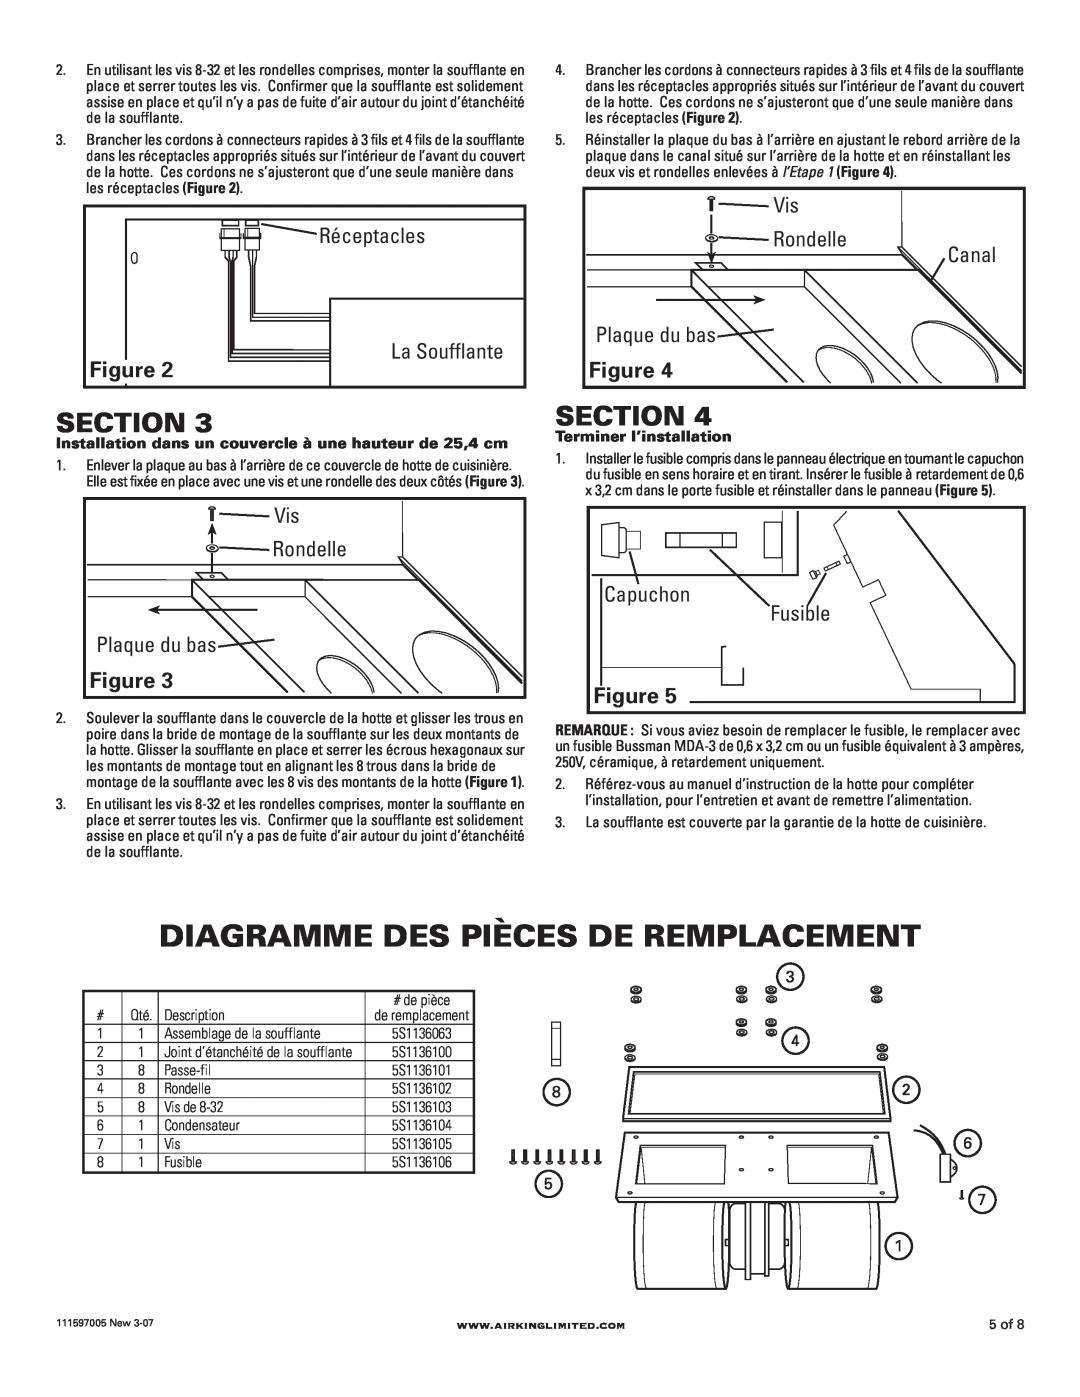 Air King B600 installation instructions Diagramme Des Pièces De Remplacement, Section 